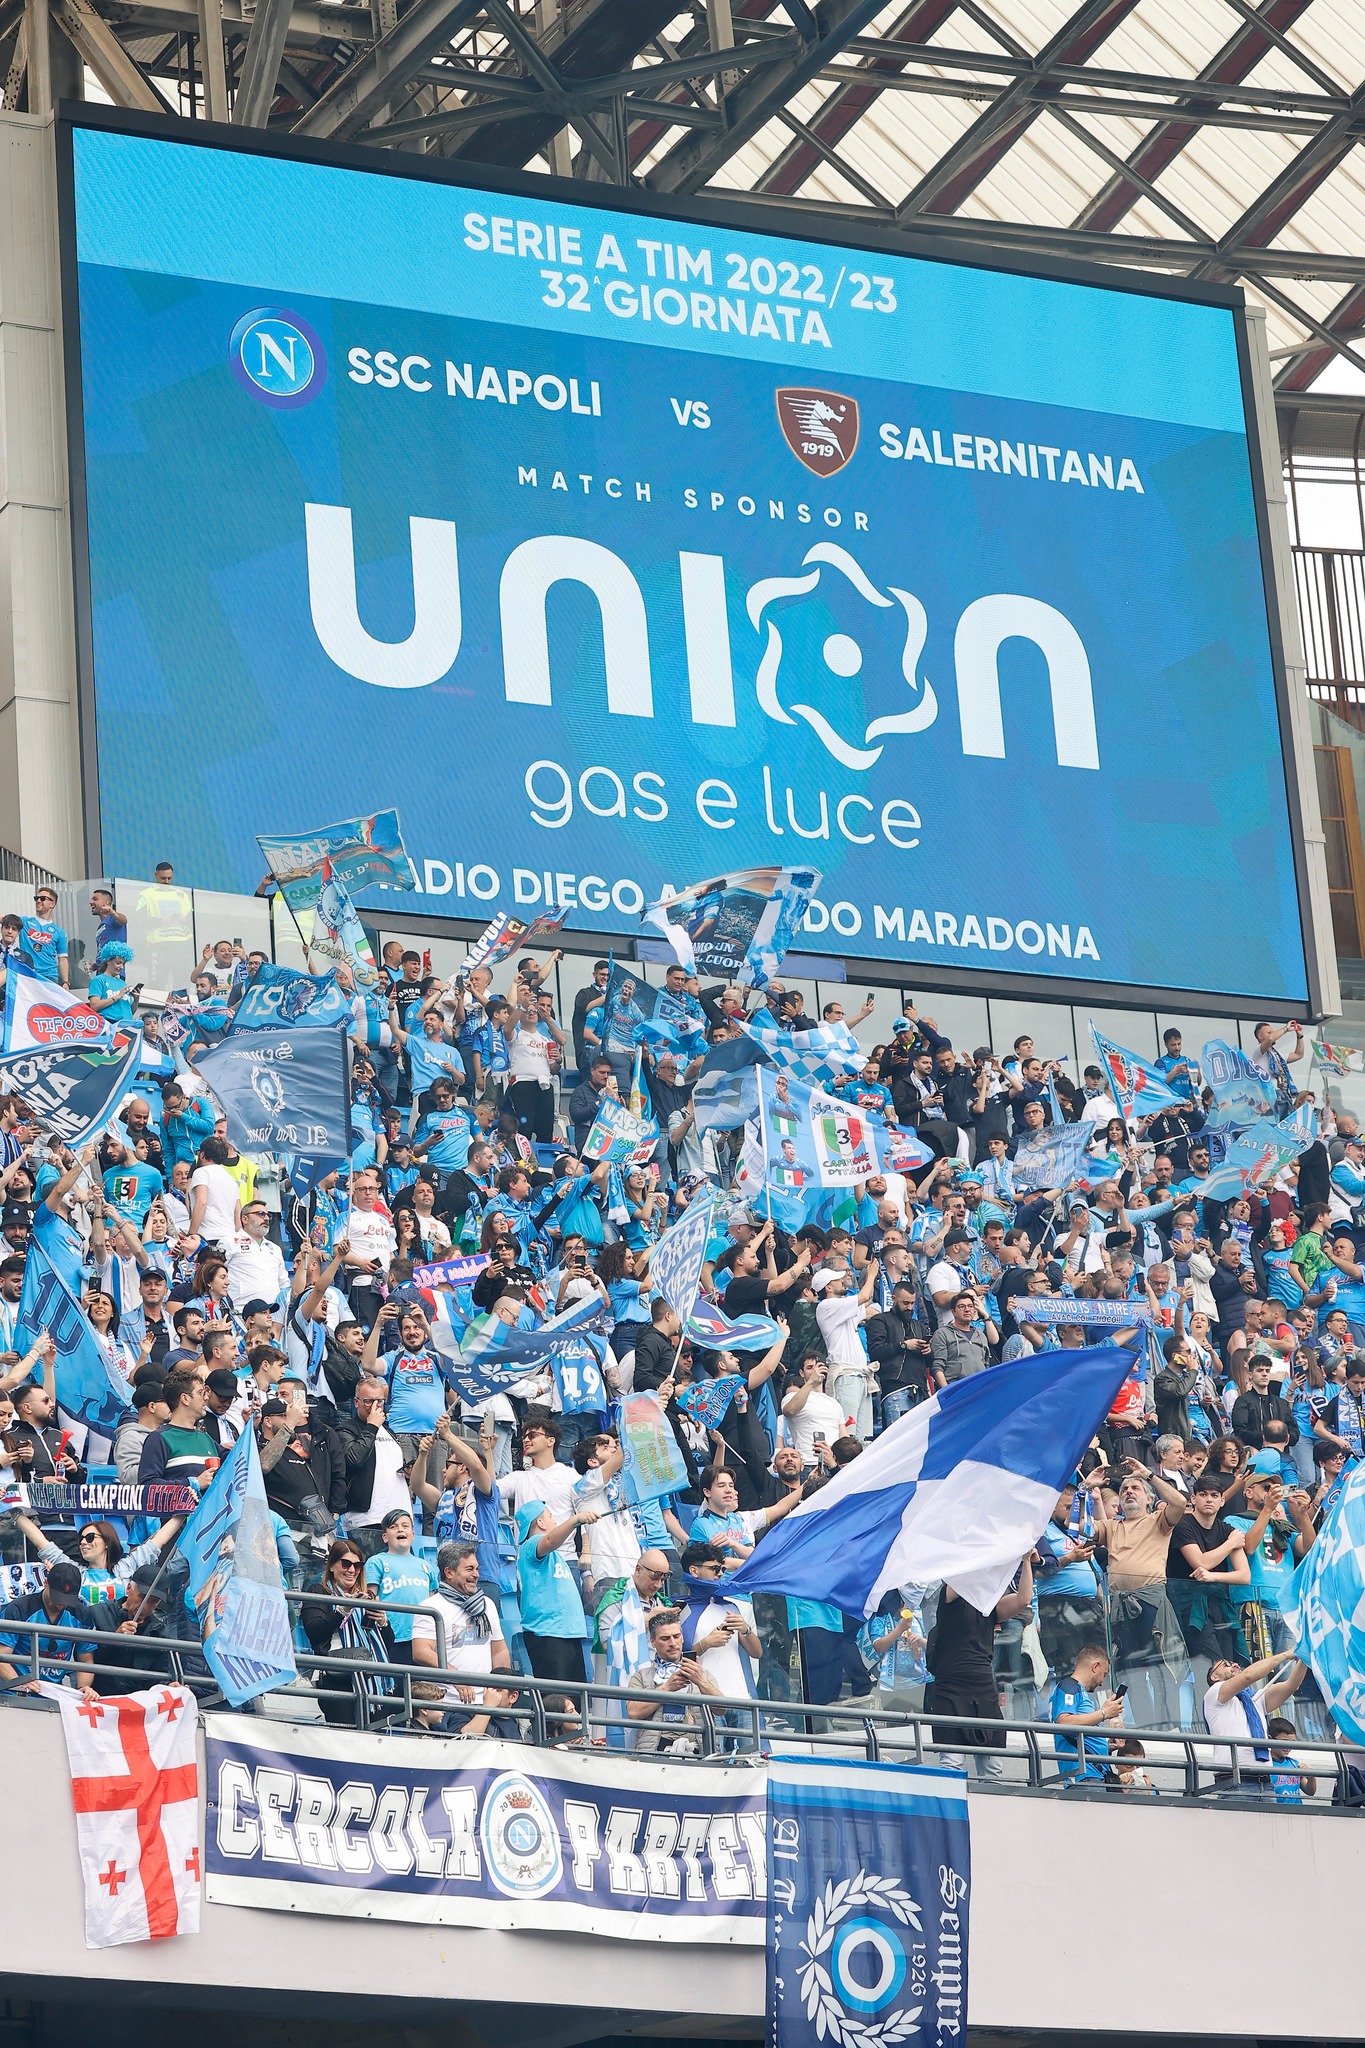 Union Gas e Luce sponsor della SSC Napoli durante il match Napoli - Salernitana 